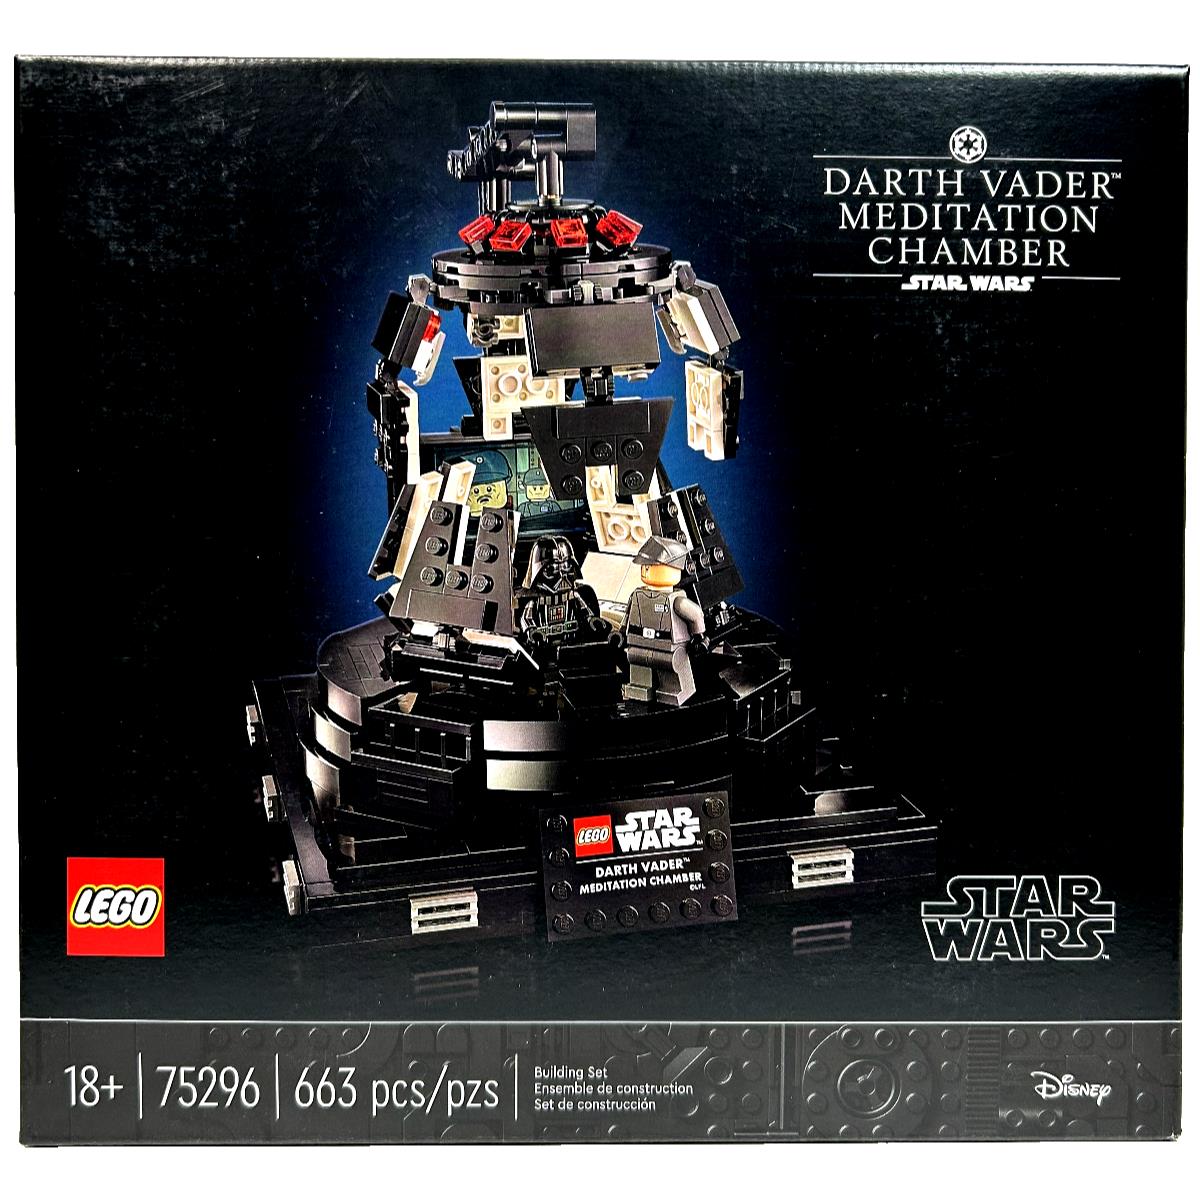 Meditation Chamber Darth Vader Lego Star Wars 75296 - Amber